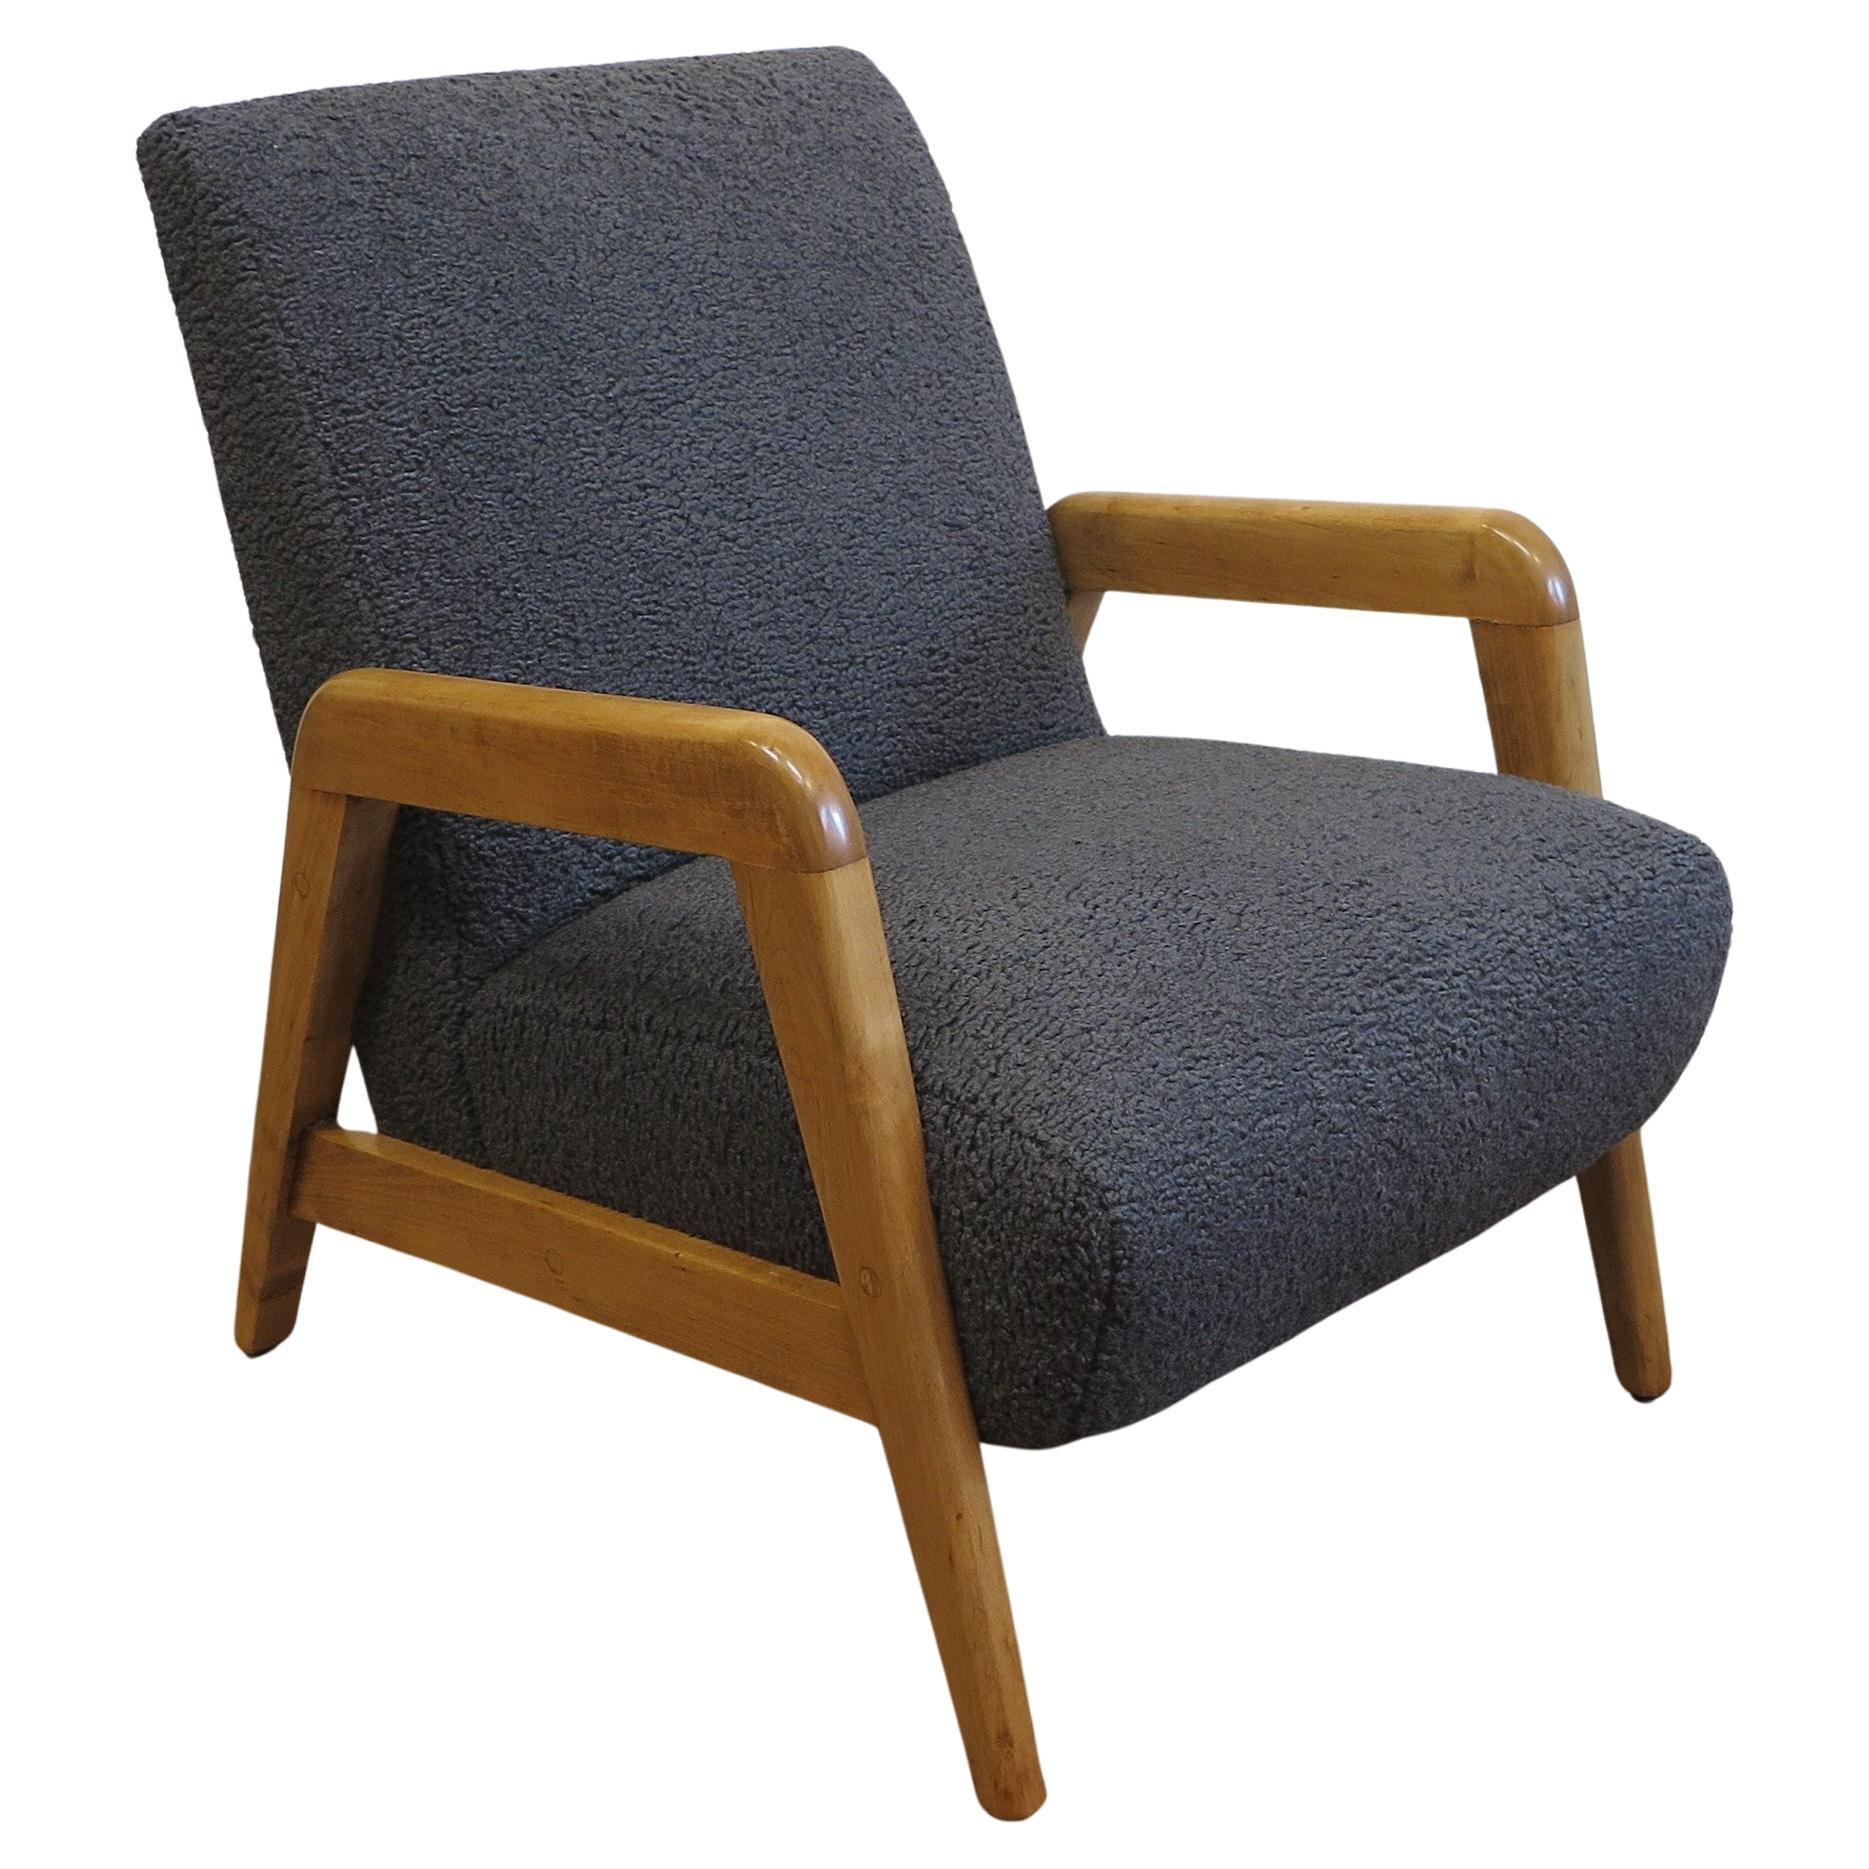 Chaise longue Russel Wright pour Thonet. Chaise de salon américaine iconique du milieu du siècle dernier, conçue par Russel Wright et produite par Thonet. Pieds de l'armature en bois d'érable massif, corps de chariot en bois à ressorts bien